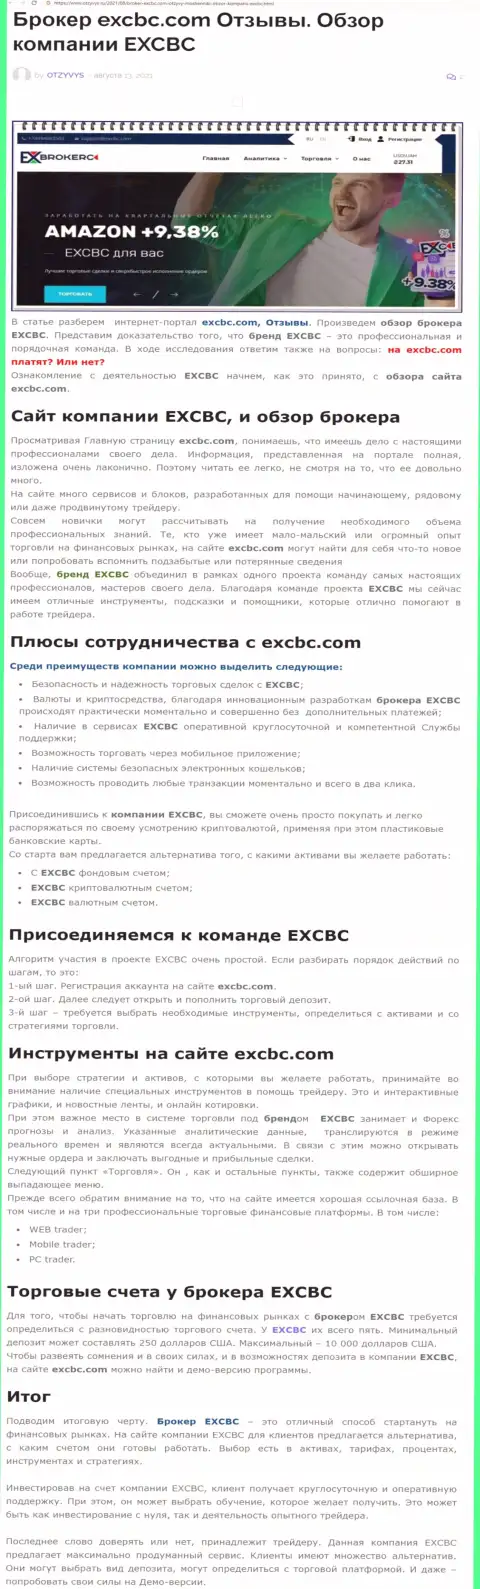 ЕХЧЕНЖБК Лтд Инк - это ответственная и порядочная Форекс брокерская компания, это следует из материала на ресурсе Otzyvys Ru